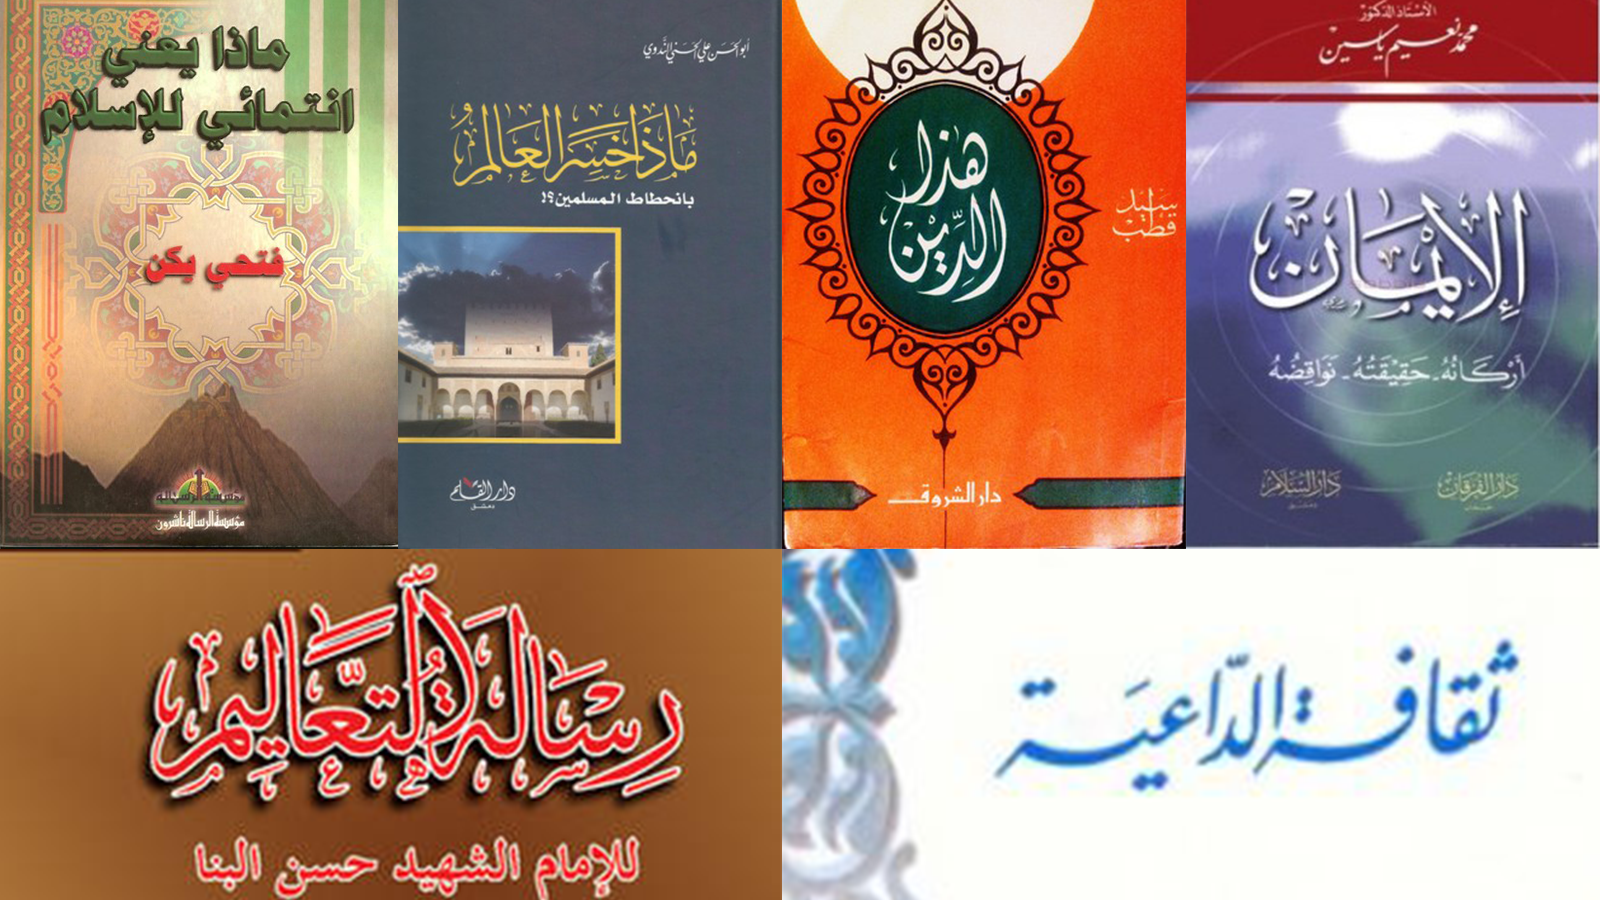 بعض الكتب التربوية التي نشرها الإخوان المسملون في محاضنهم  (مواقع التواصل)